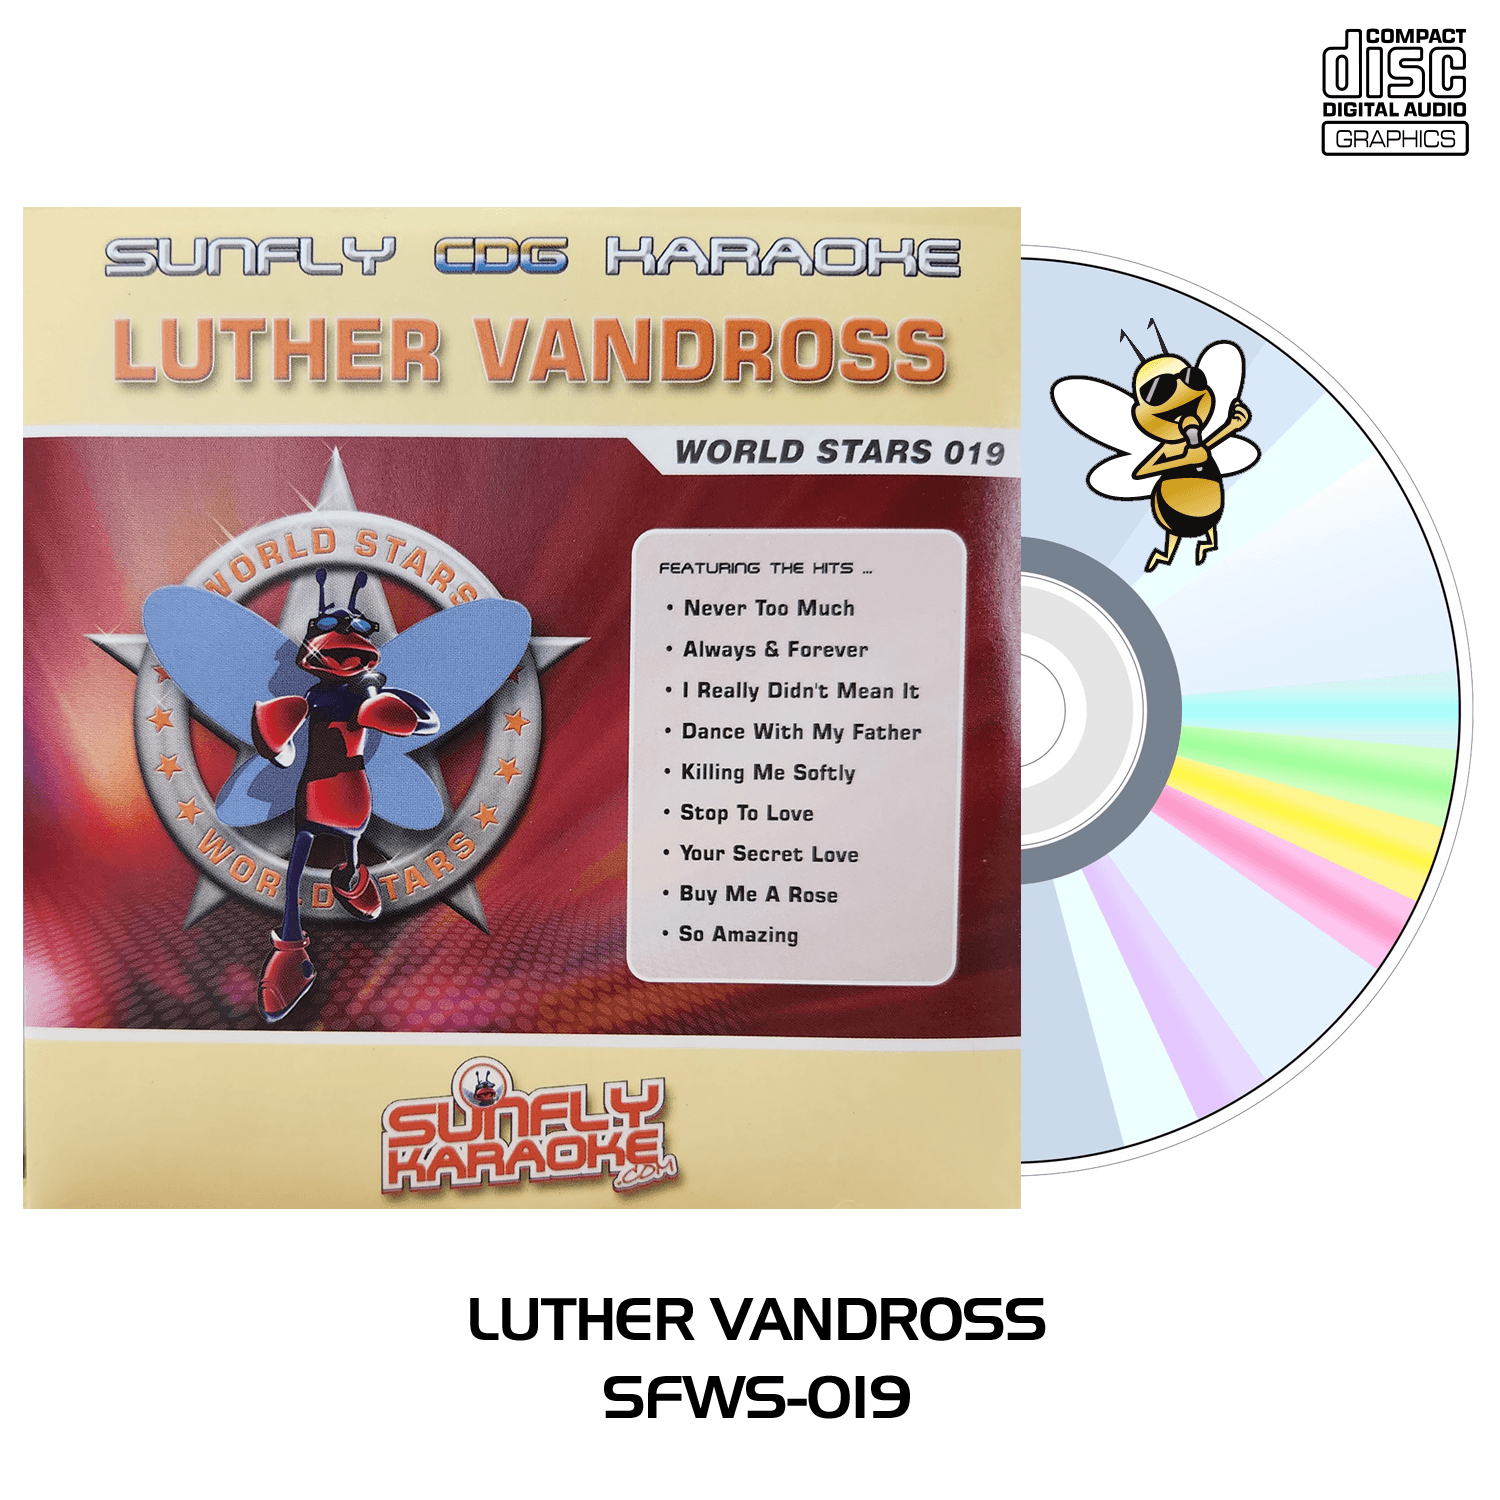 Luther Vandross - Sunfly Karaoke World Stars - CD+G - Karaoke Home Entertainment